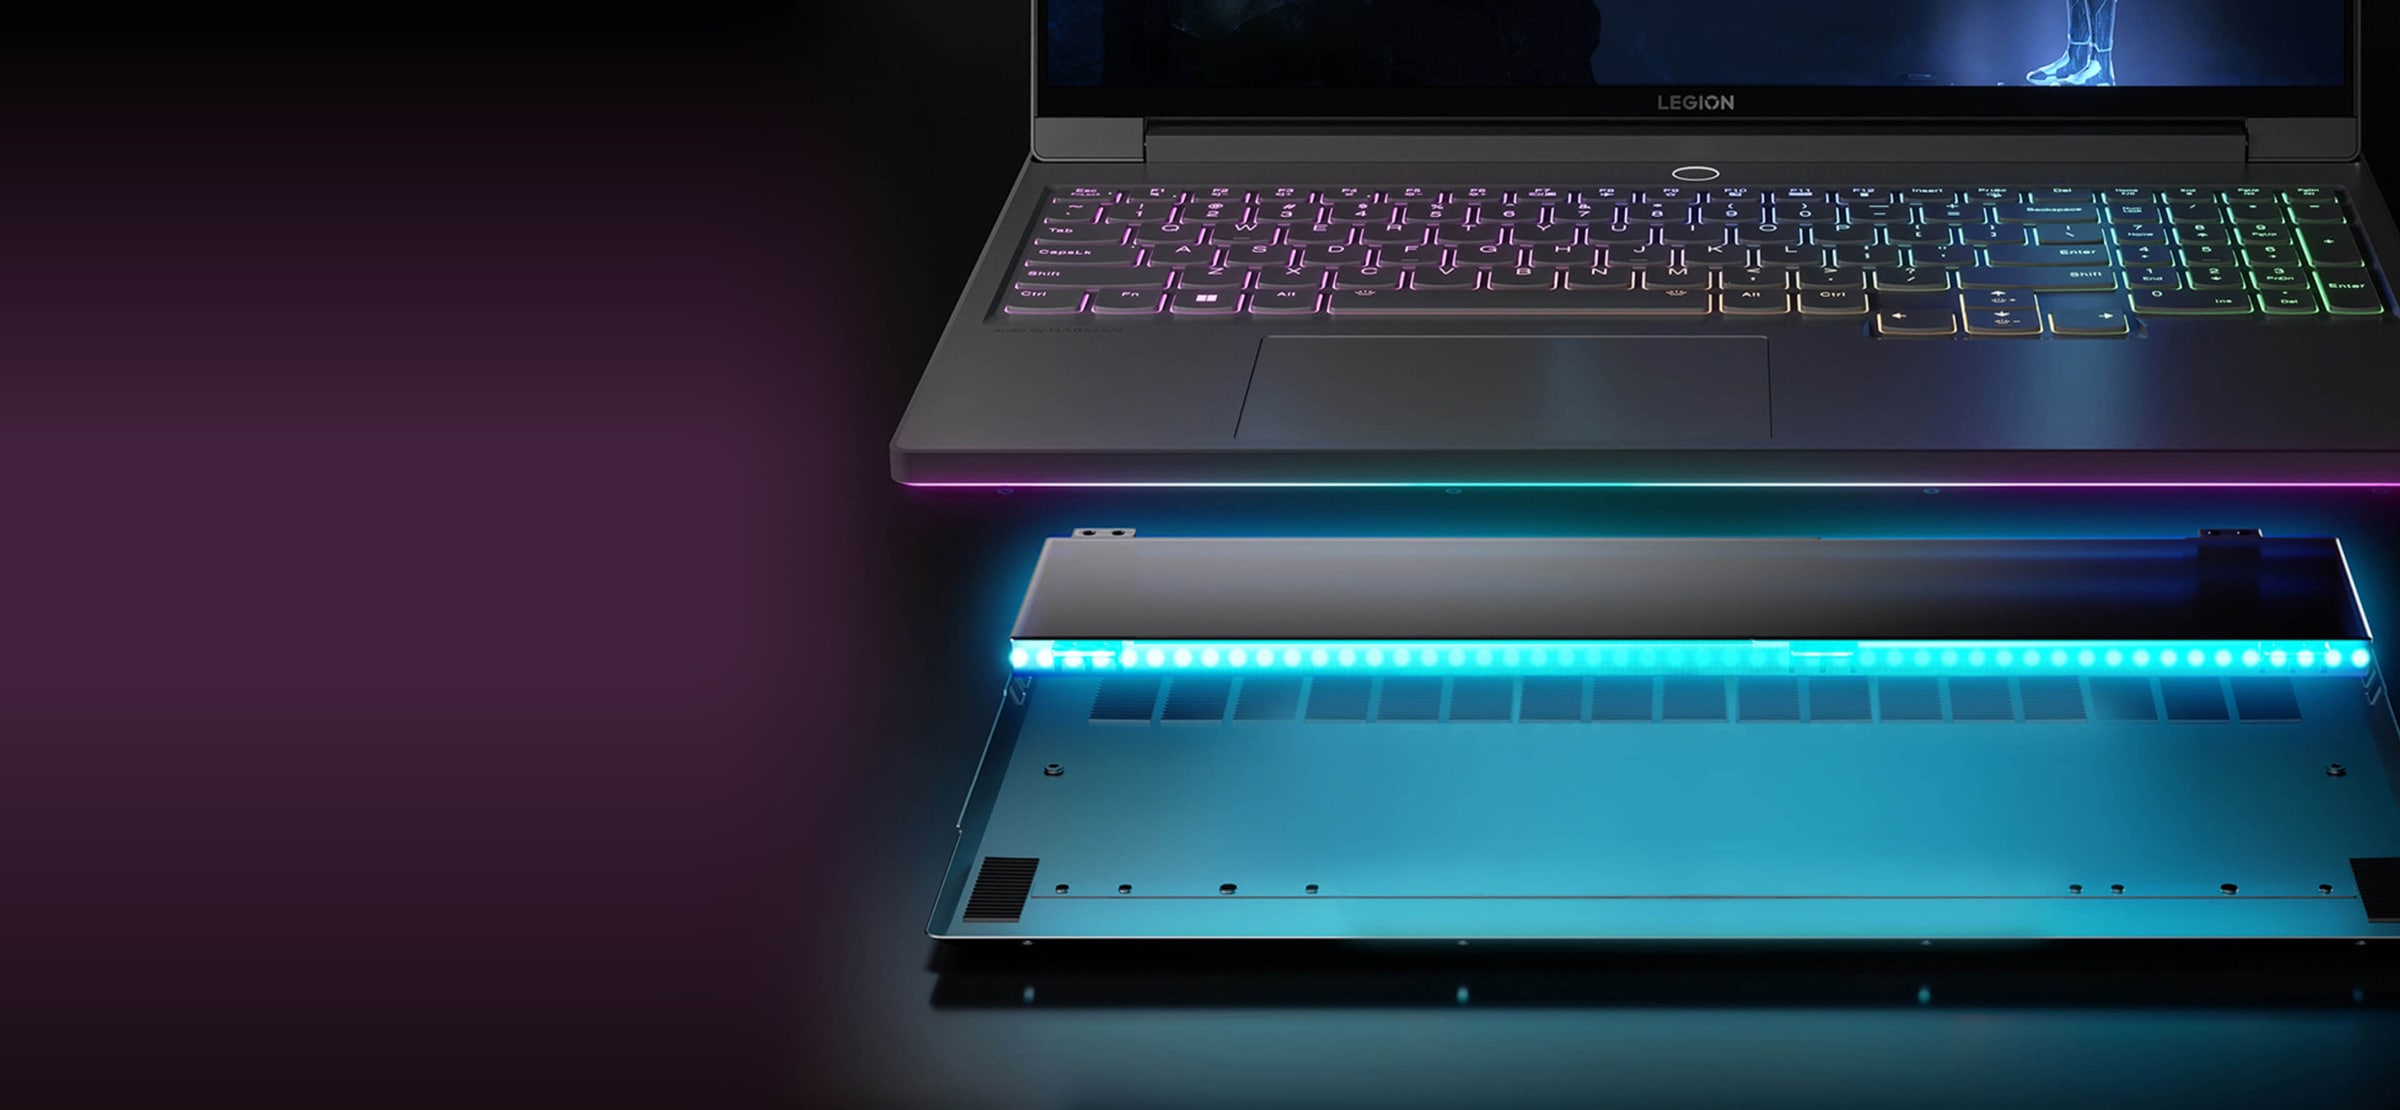 Vooraanzicht van Legion 7-laptop die 90 graden is geopend, met een kwart van het scherm en een volledig toetsenbord dat lijkt te zijn losgekoppeld van de basis, waardoor een zicht wordt getoond op een lange Whr-batterij die stevig in de achterkant van de basis past.